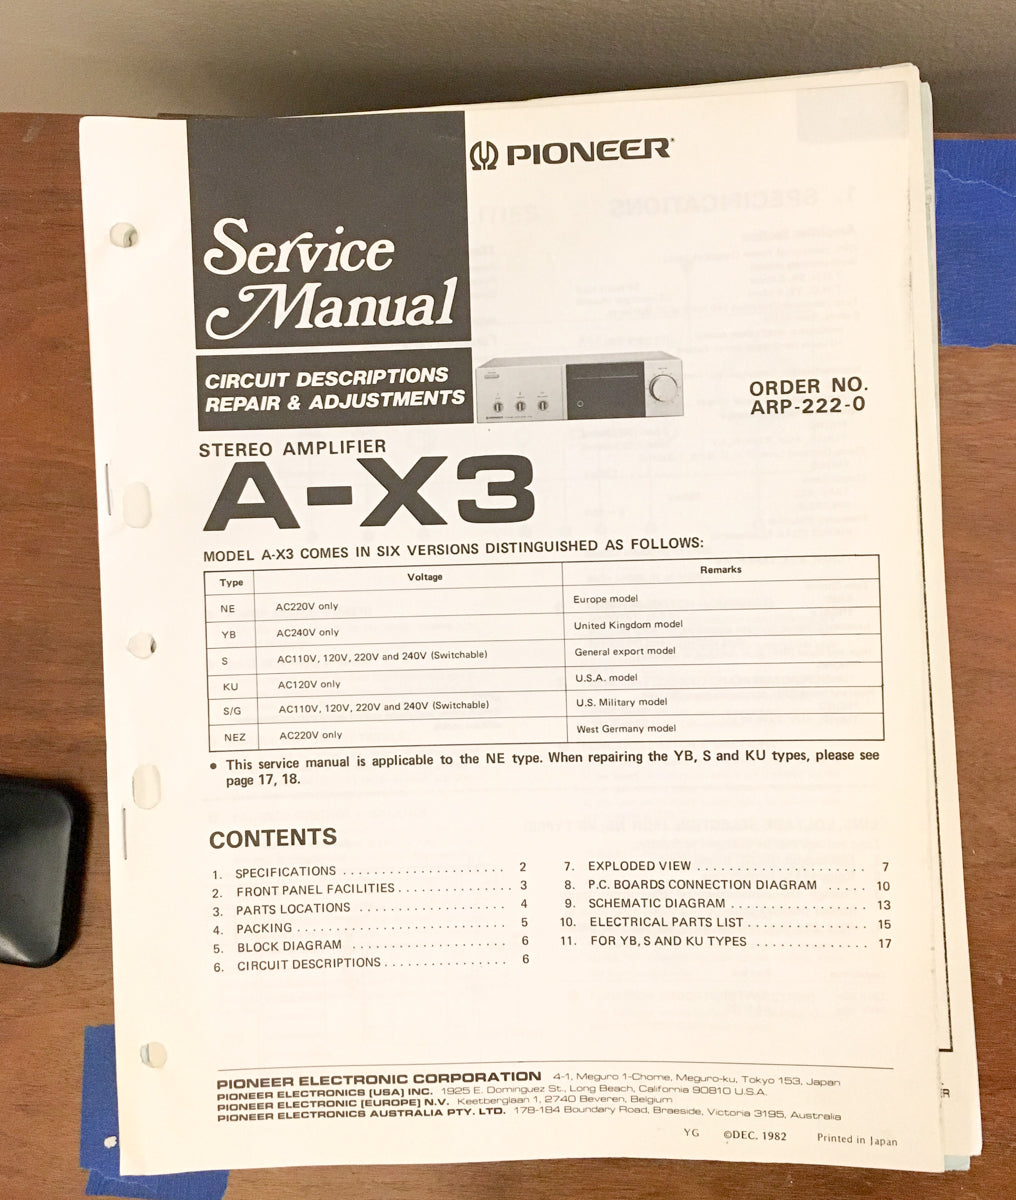 Pioneer A-X3 Amplifier Service Manual *Original*